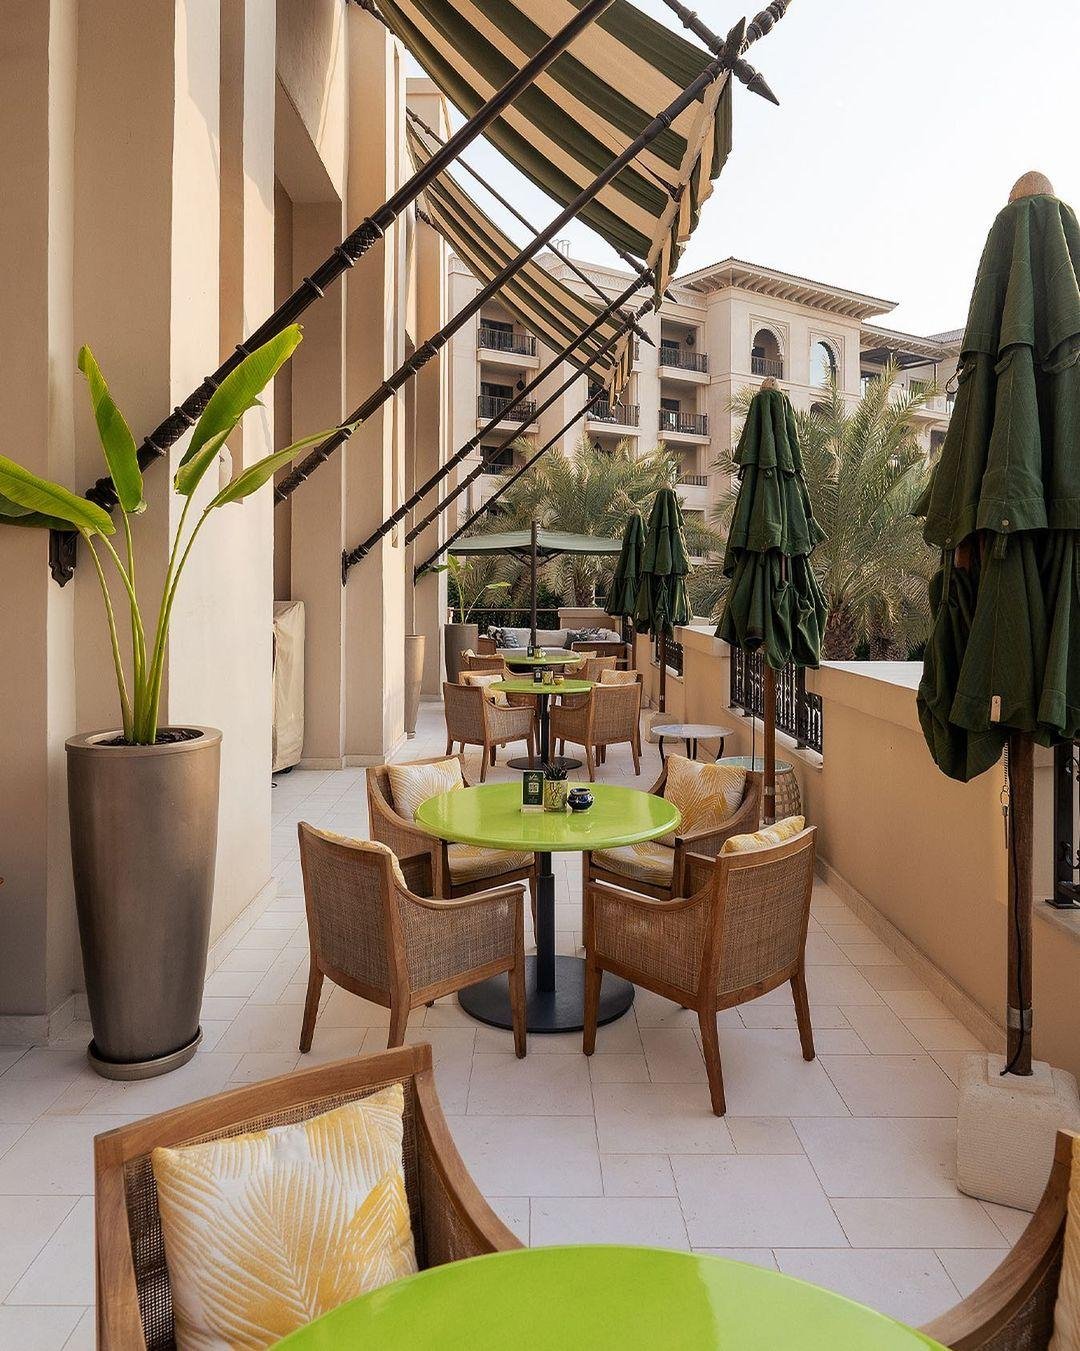 مقاهي  المقاهي   مقهى   دبي   الامارات   الامارات العربية المتحدة 